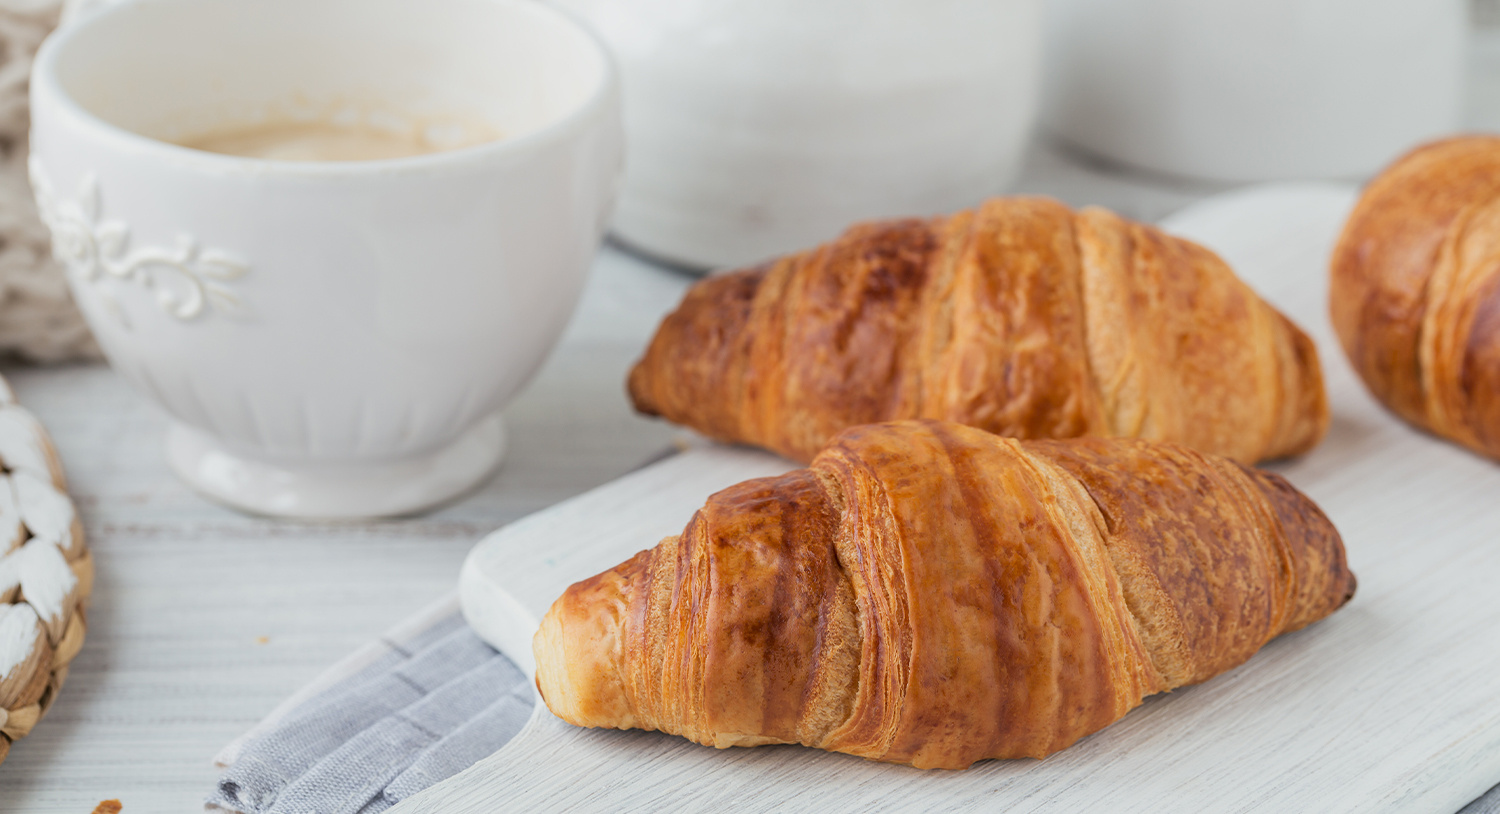 rogale-croissanty-przekąska-śniadanie-kawa-z-ekspresu-ciśnieniowego-śniadanie-drugie-śniadanie